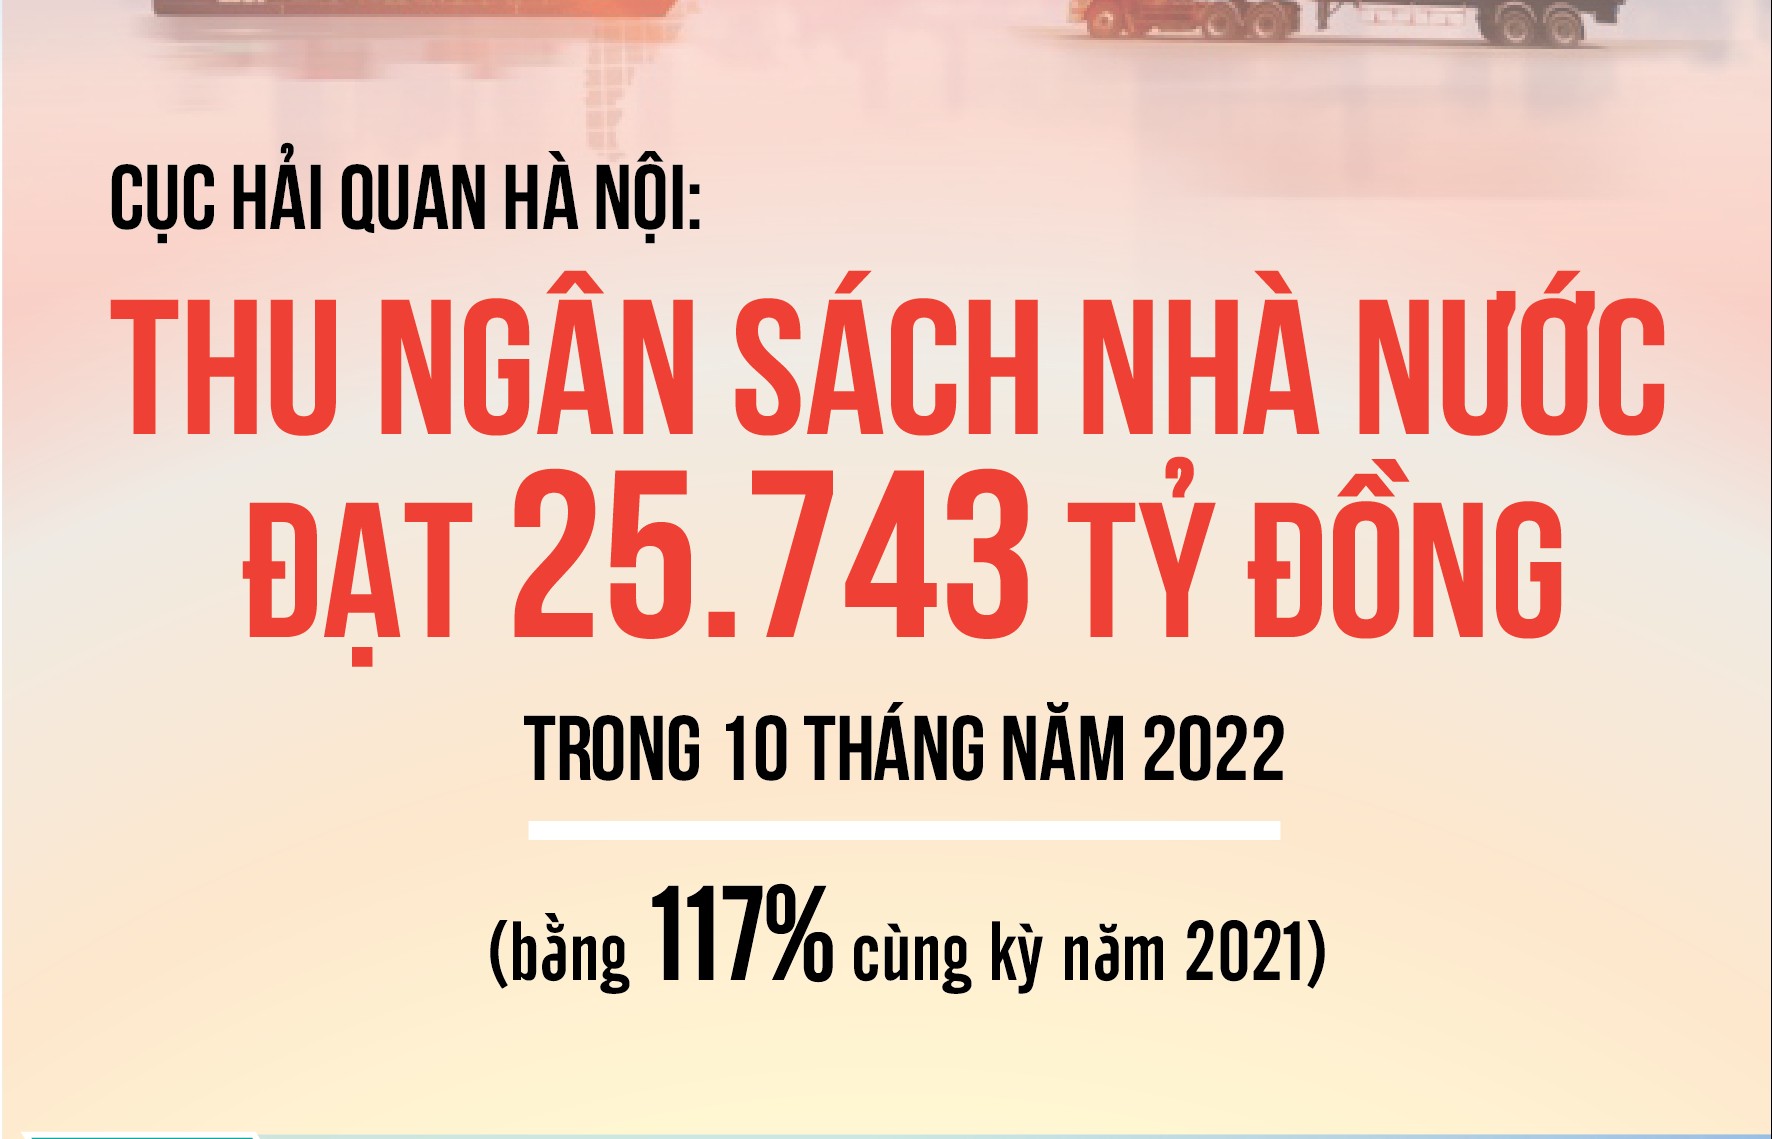 Cục Hải quan Hà Nội: Thu ngân sách nhà nước đạt 25.743 tỷ đồng trong 10 tháng năm 2022